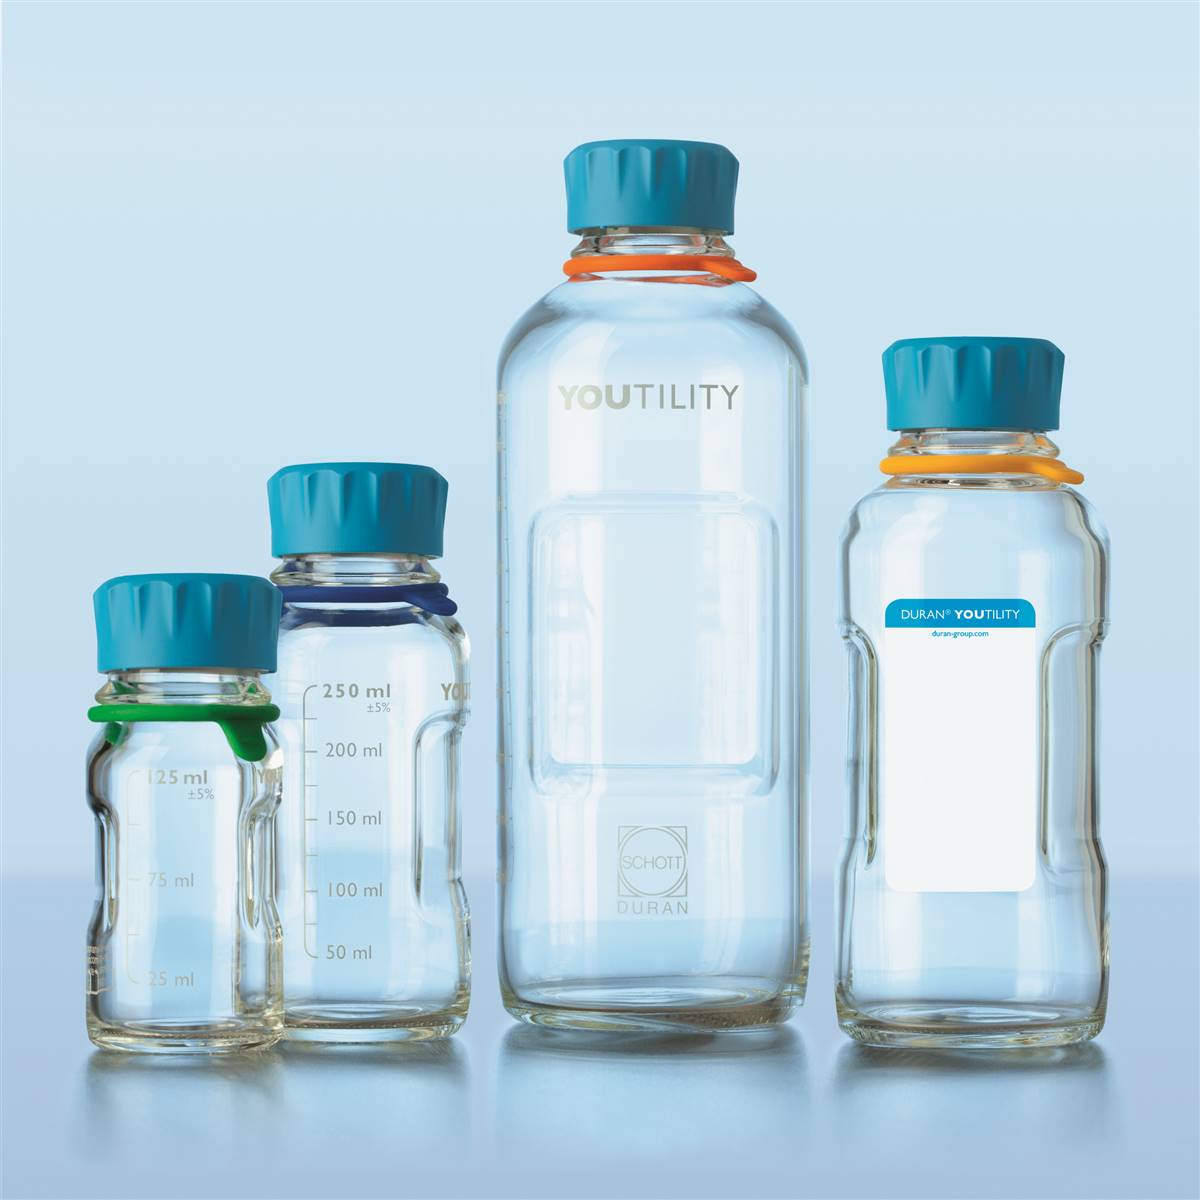 DURAN® Youtility Reagent / Storage Bottle - 500ml